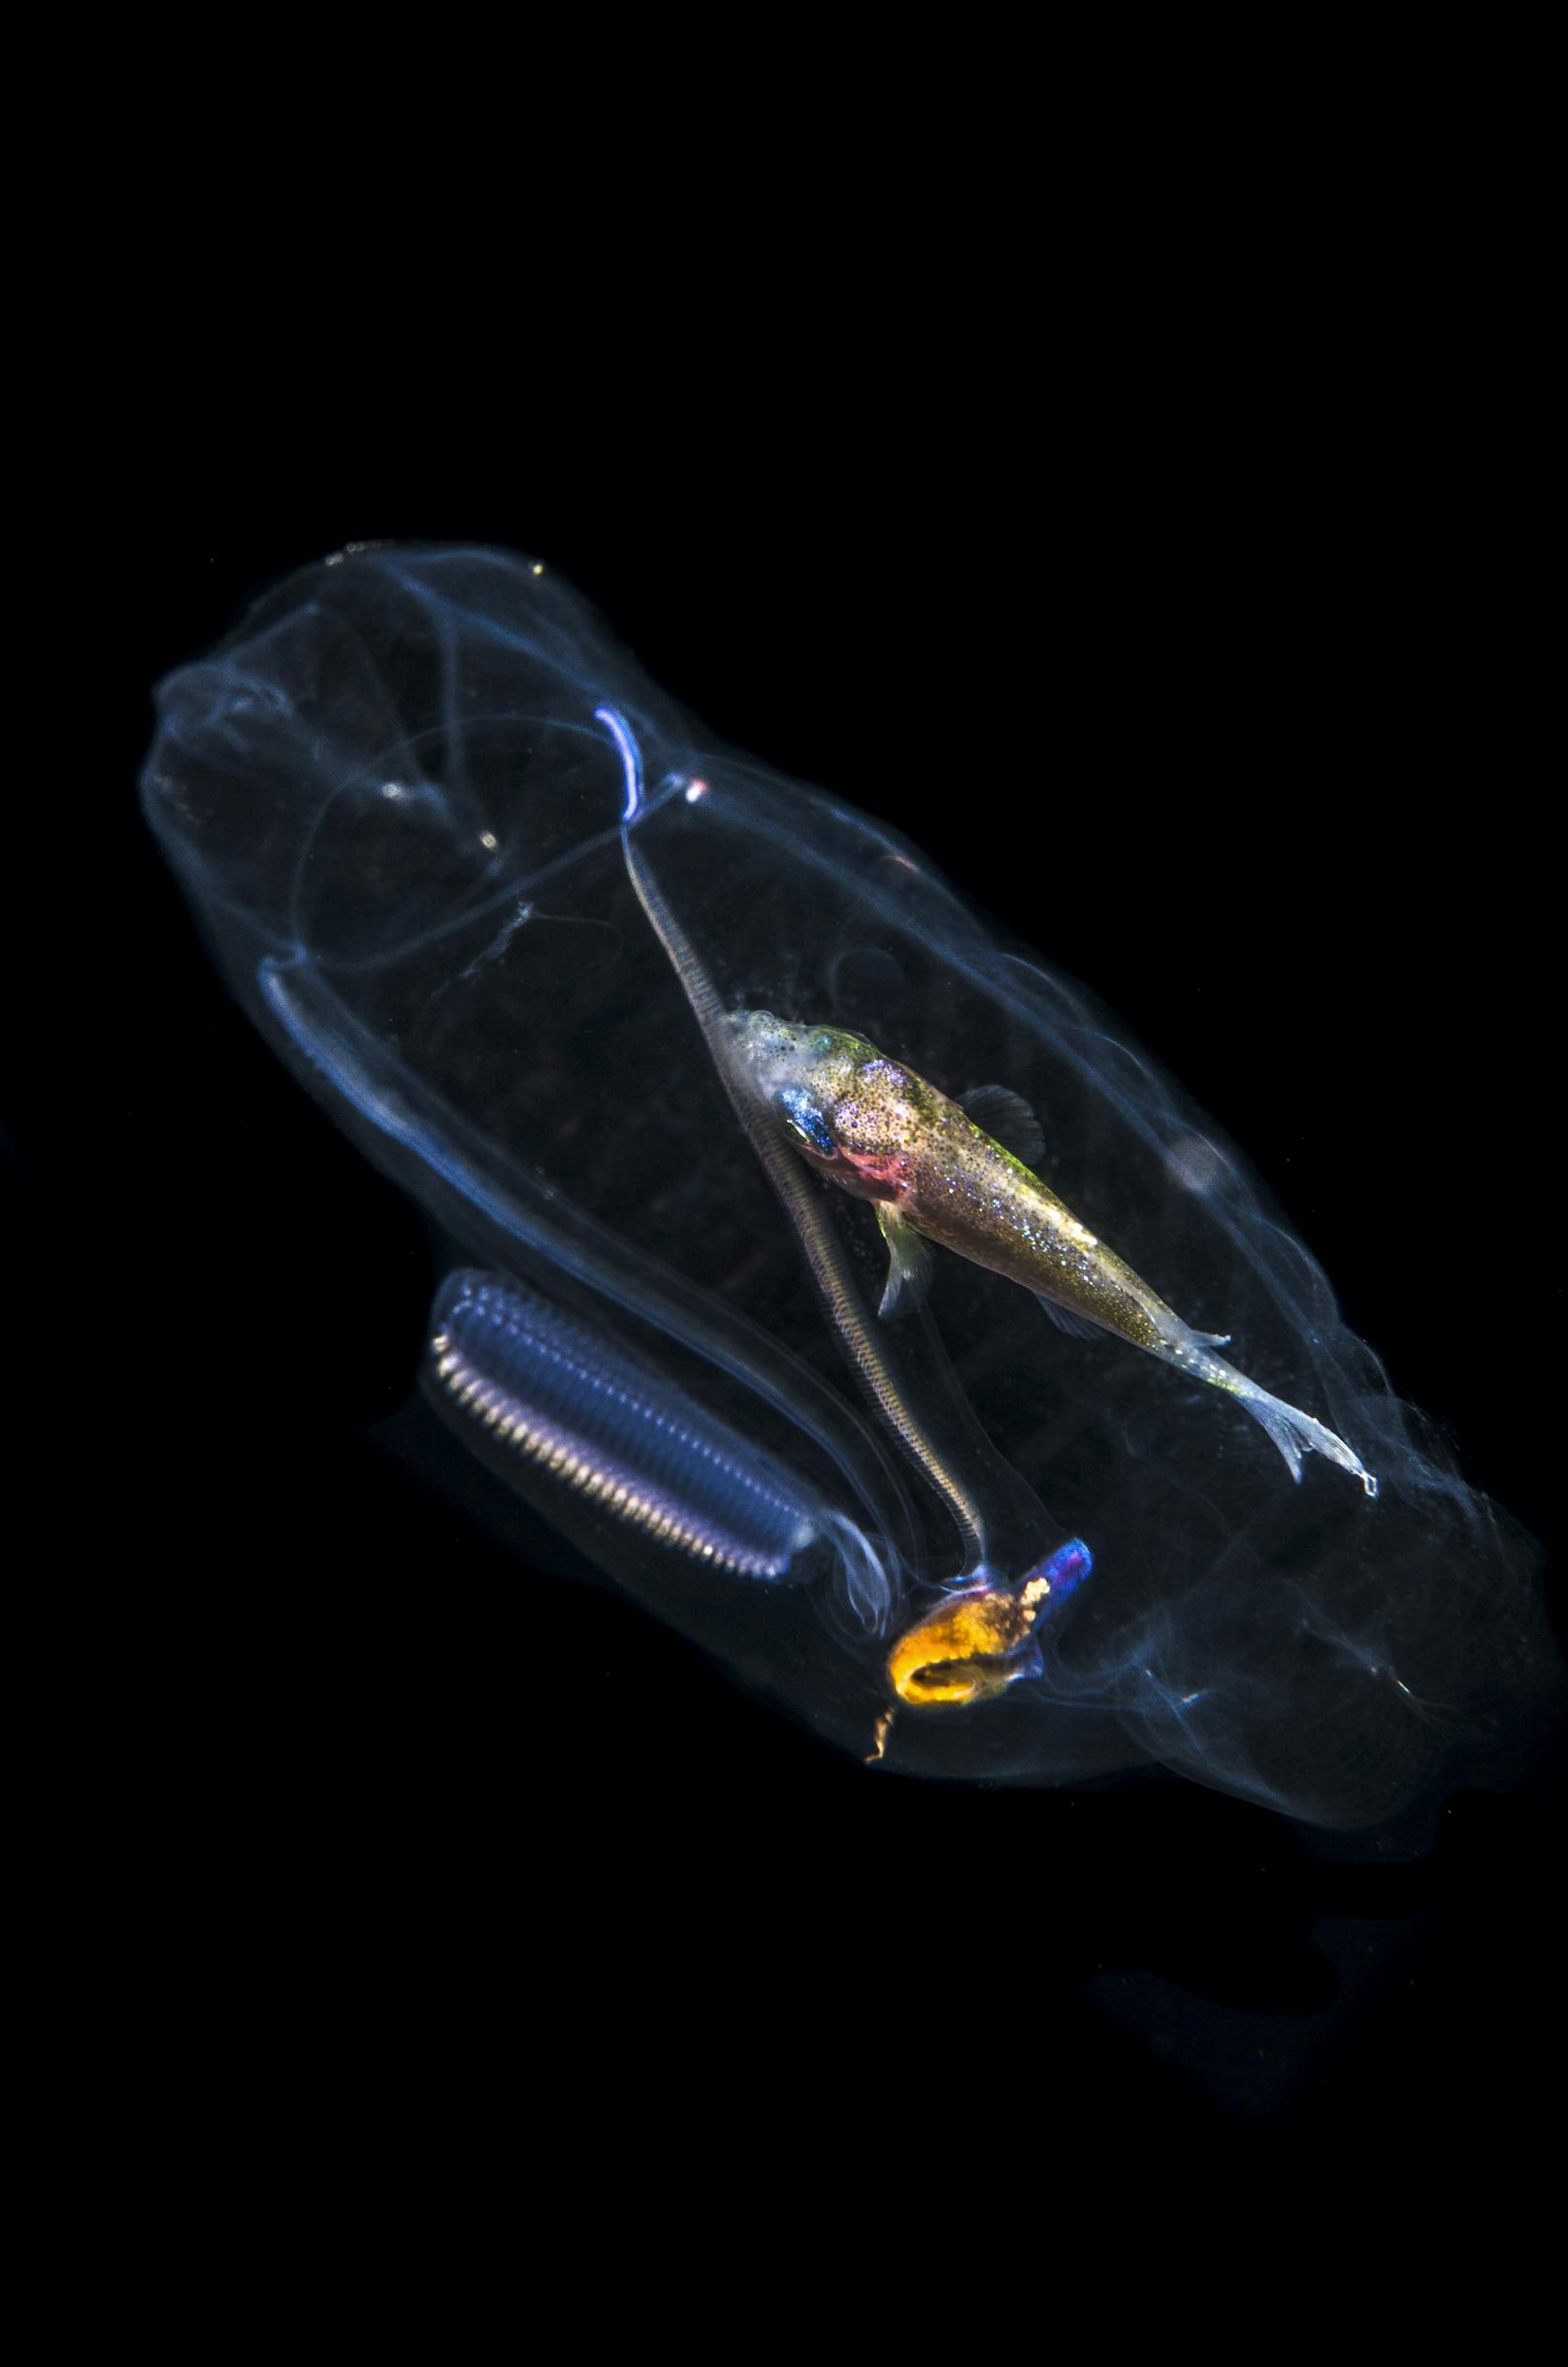 Mahlzeit! Fisch liegt im Bauch eines durchsichtigen Meeresbewohners.&nbsp;Dieses Foto entstand in ungefähr 150 Metern Tiefe. Es zeigt ein durchsichtiges Meereswesen, dessen Mittagessen noch deutlich in seinem durchsichtigen Magen zu sehen ist.